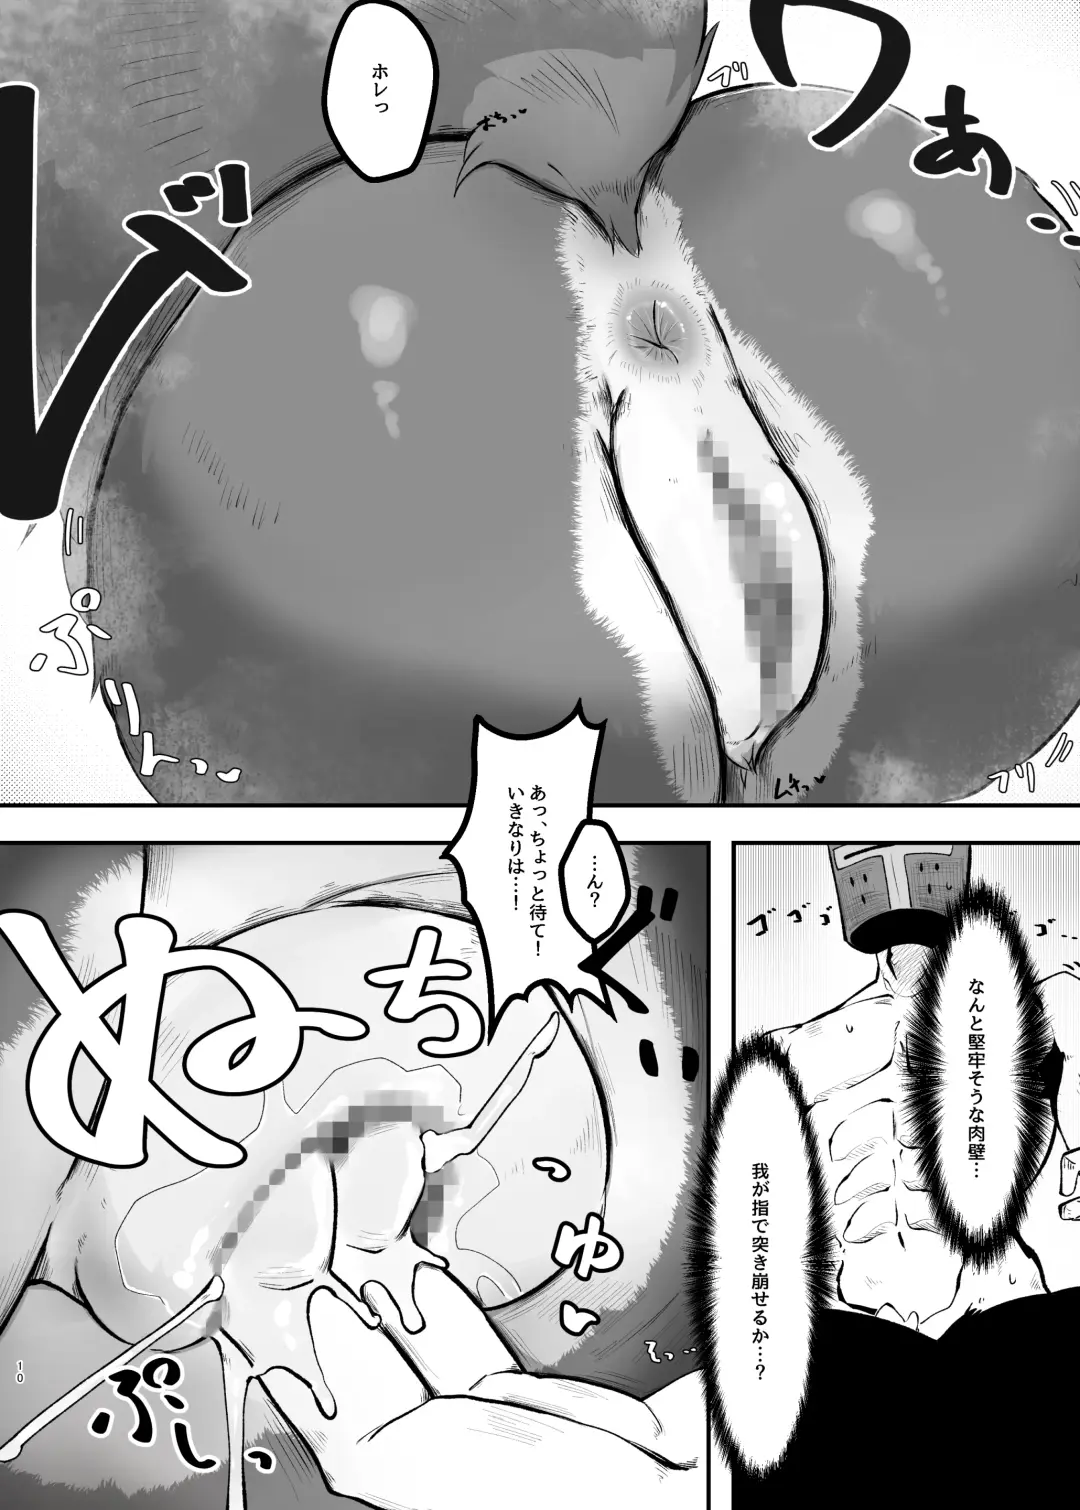 Kukkoro kara hajimaru kemoero manga Fhentai.net - Page 10